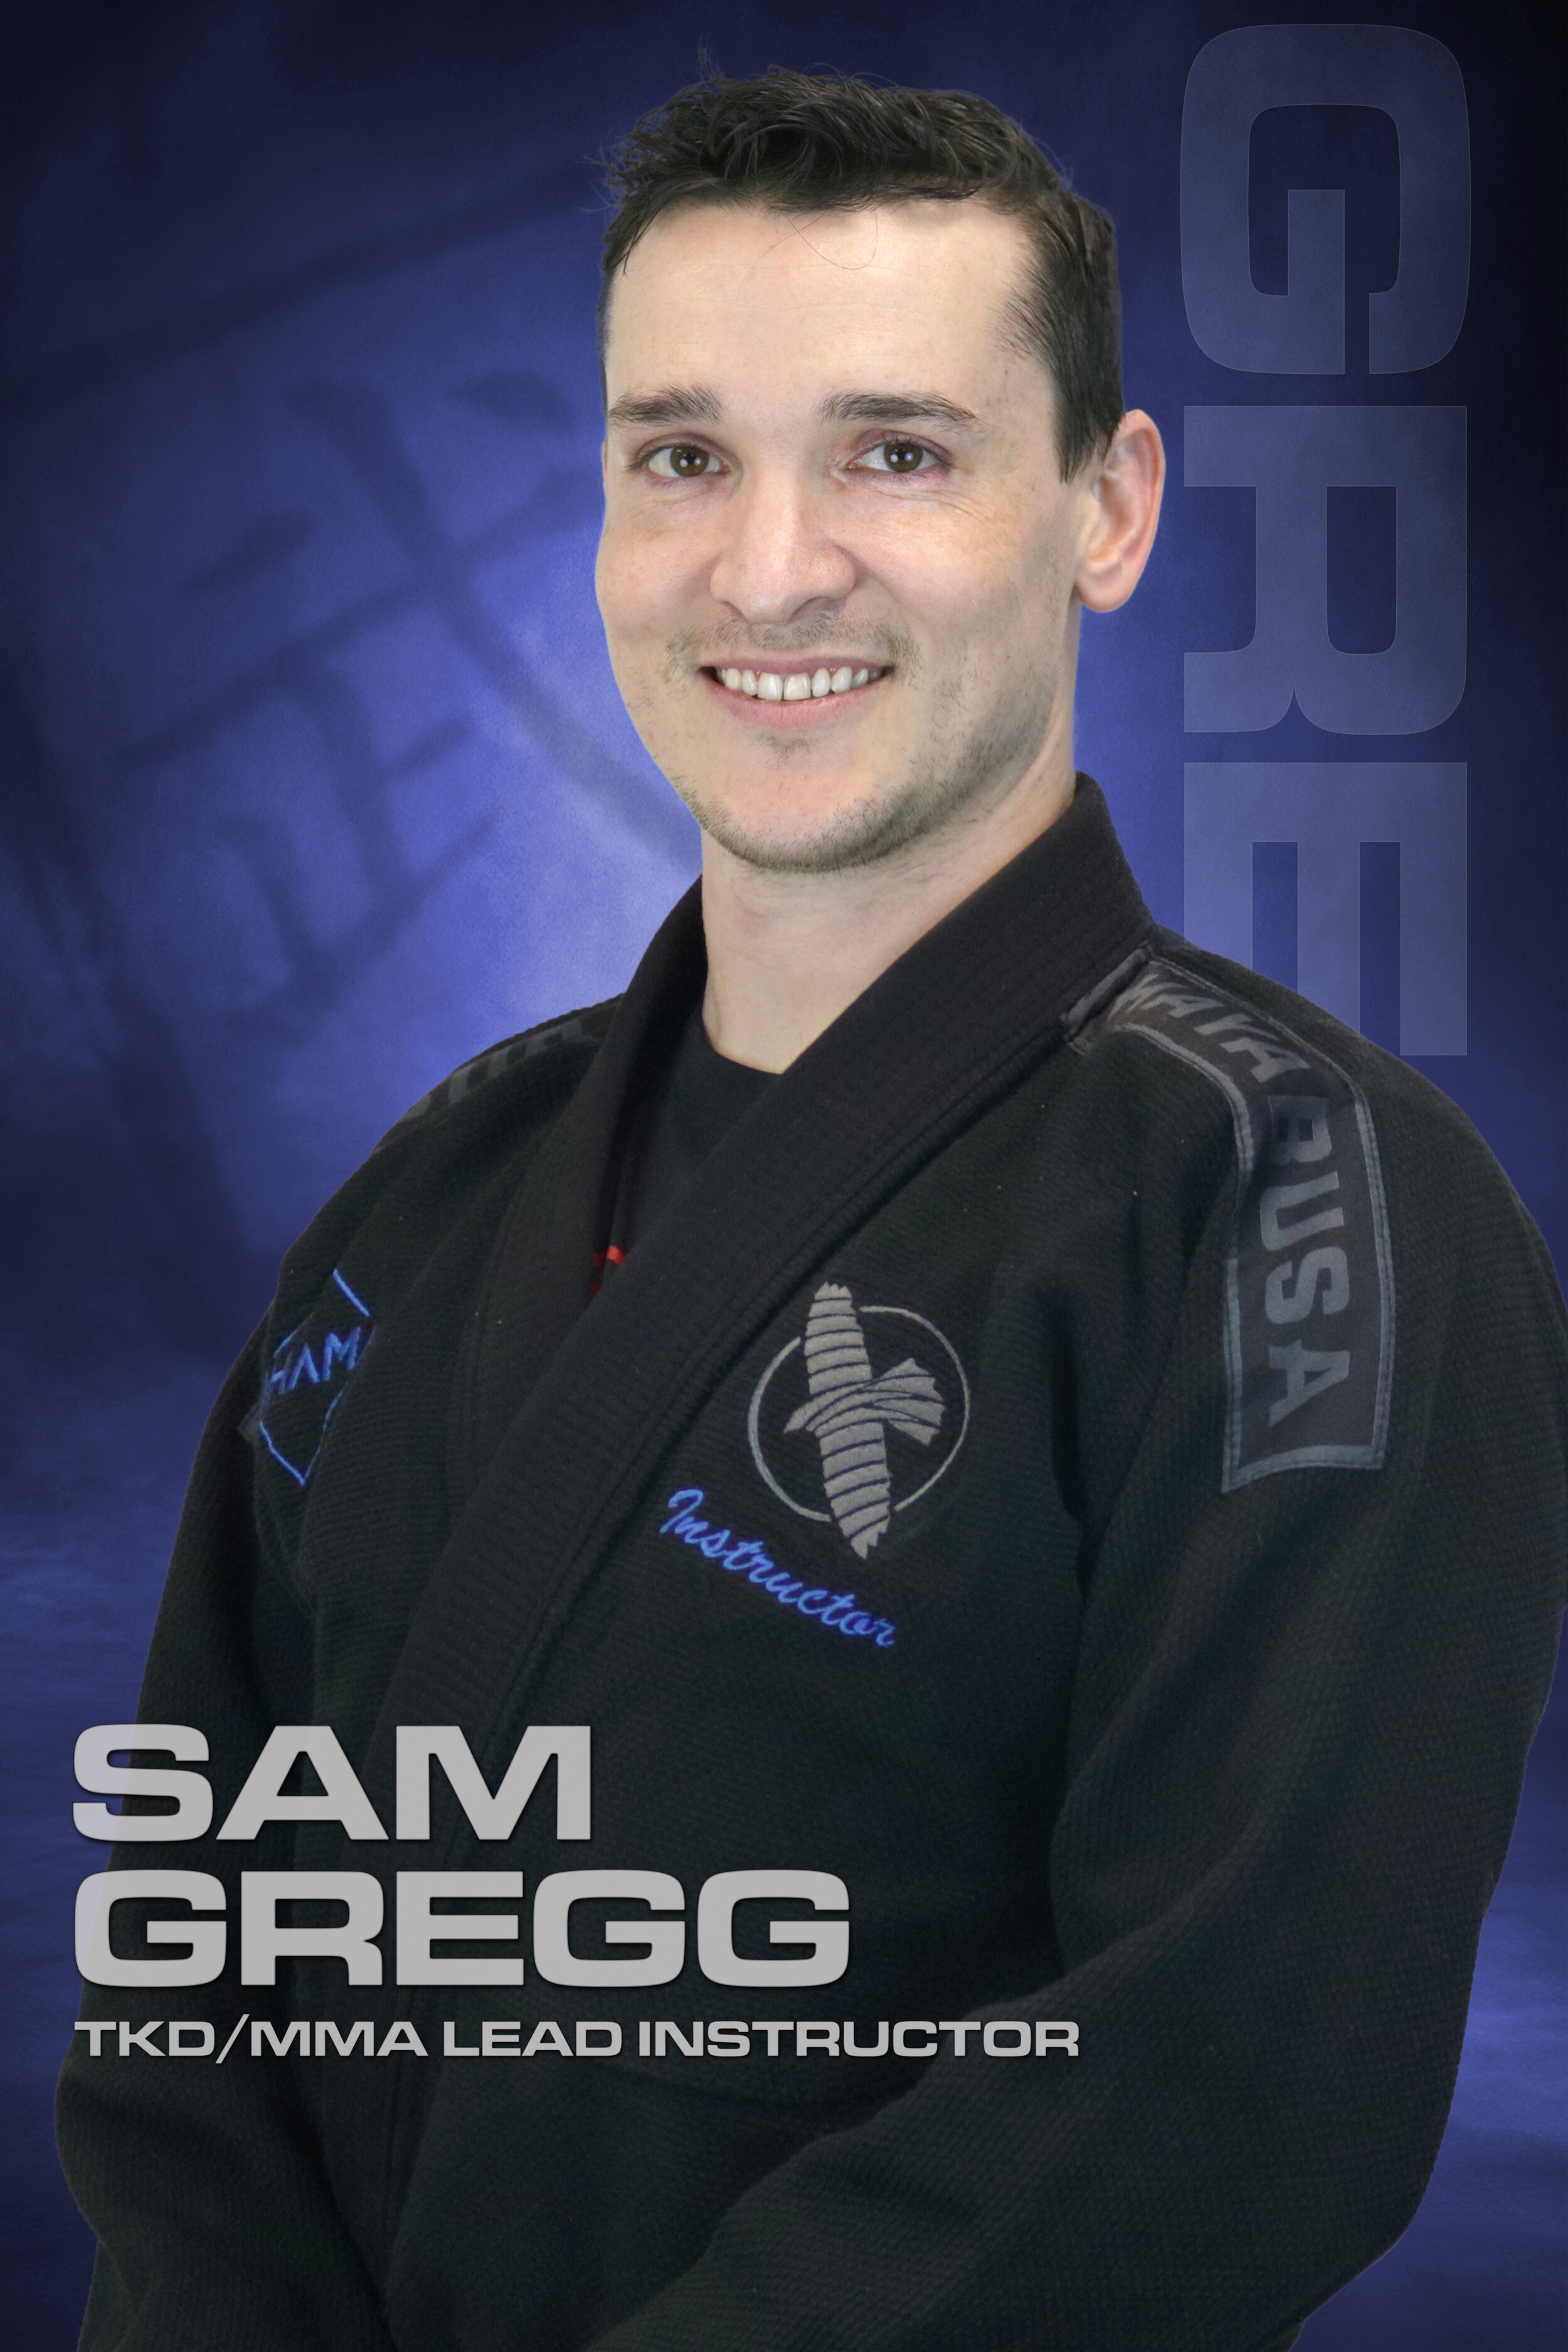 Sam Gregg, TKD/MMA Lead Instructor